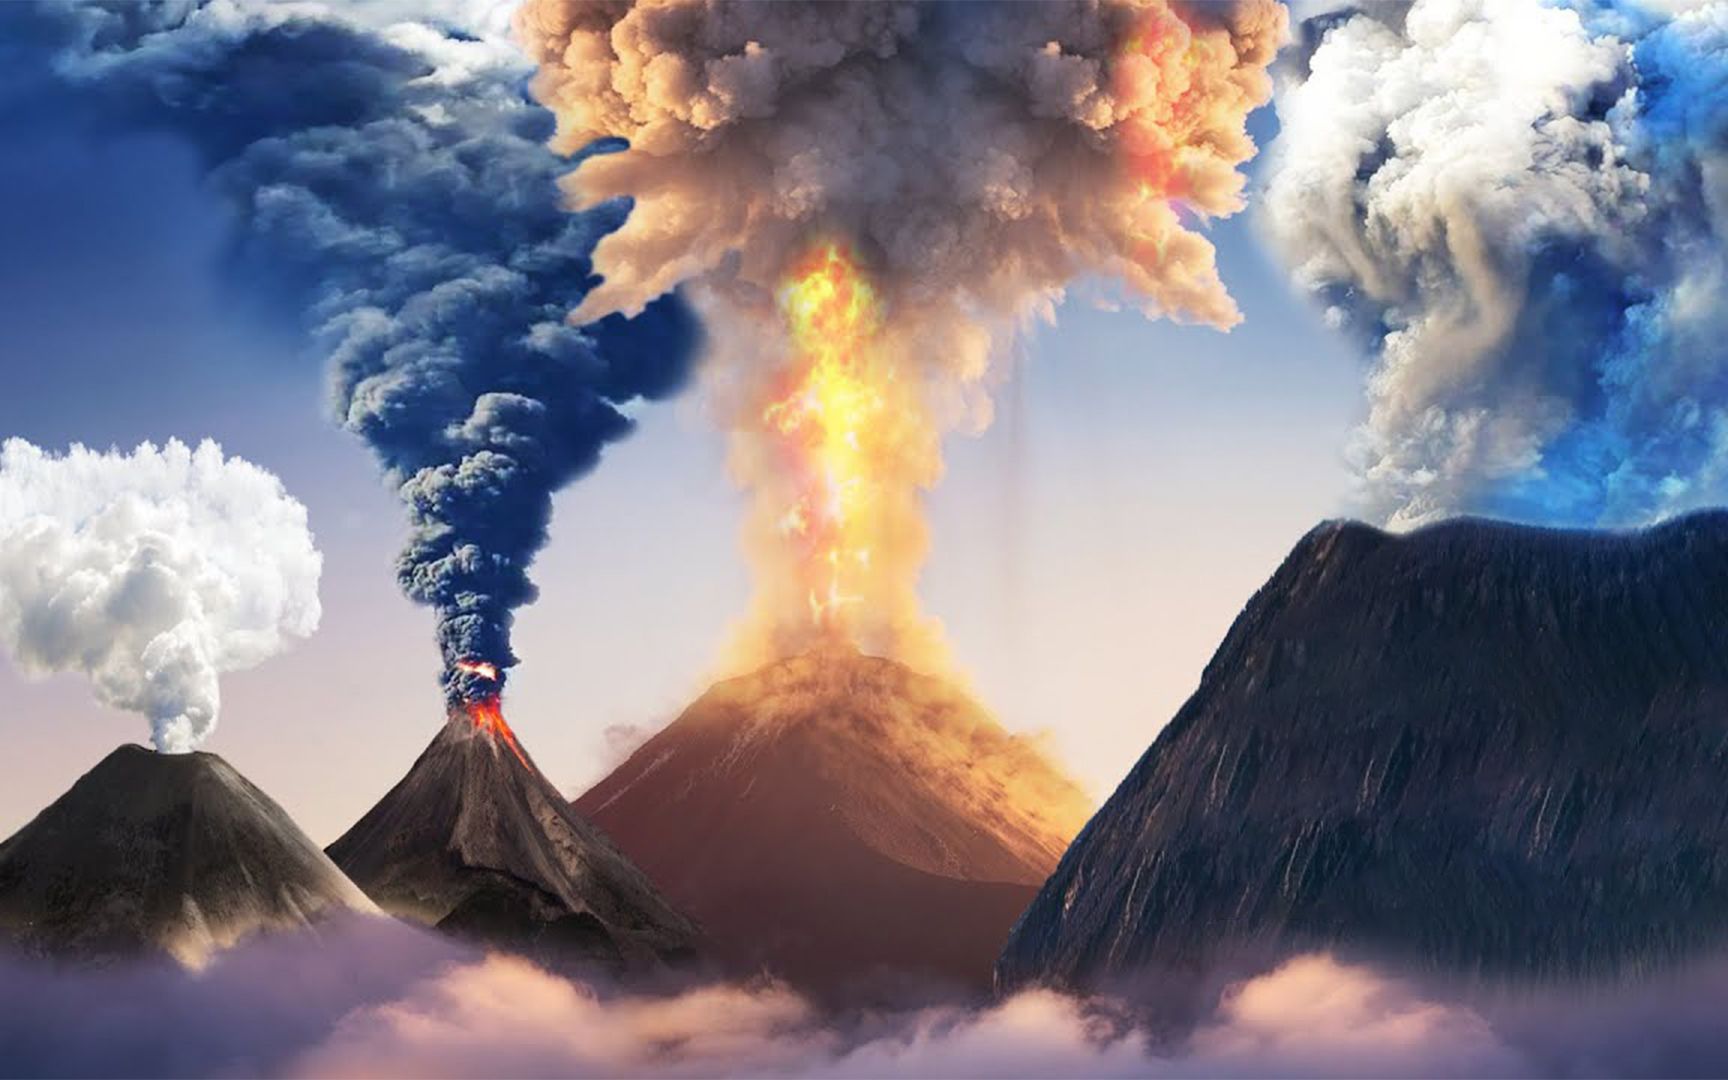 有史以来最具毁灭性的火山喷发是哪次?多项数据做个直观对比!